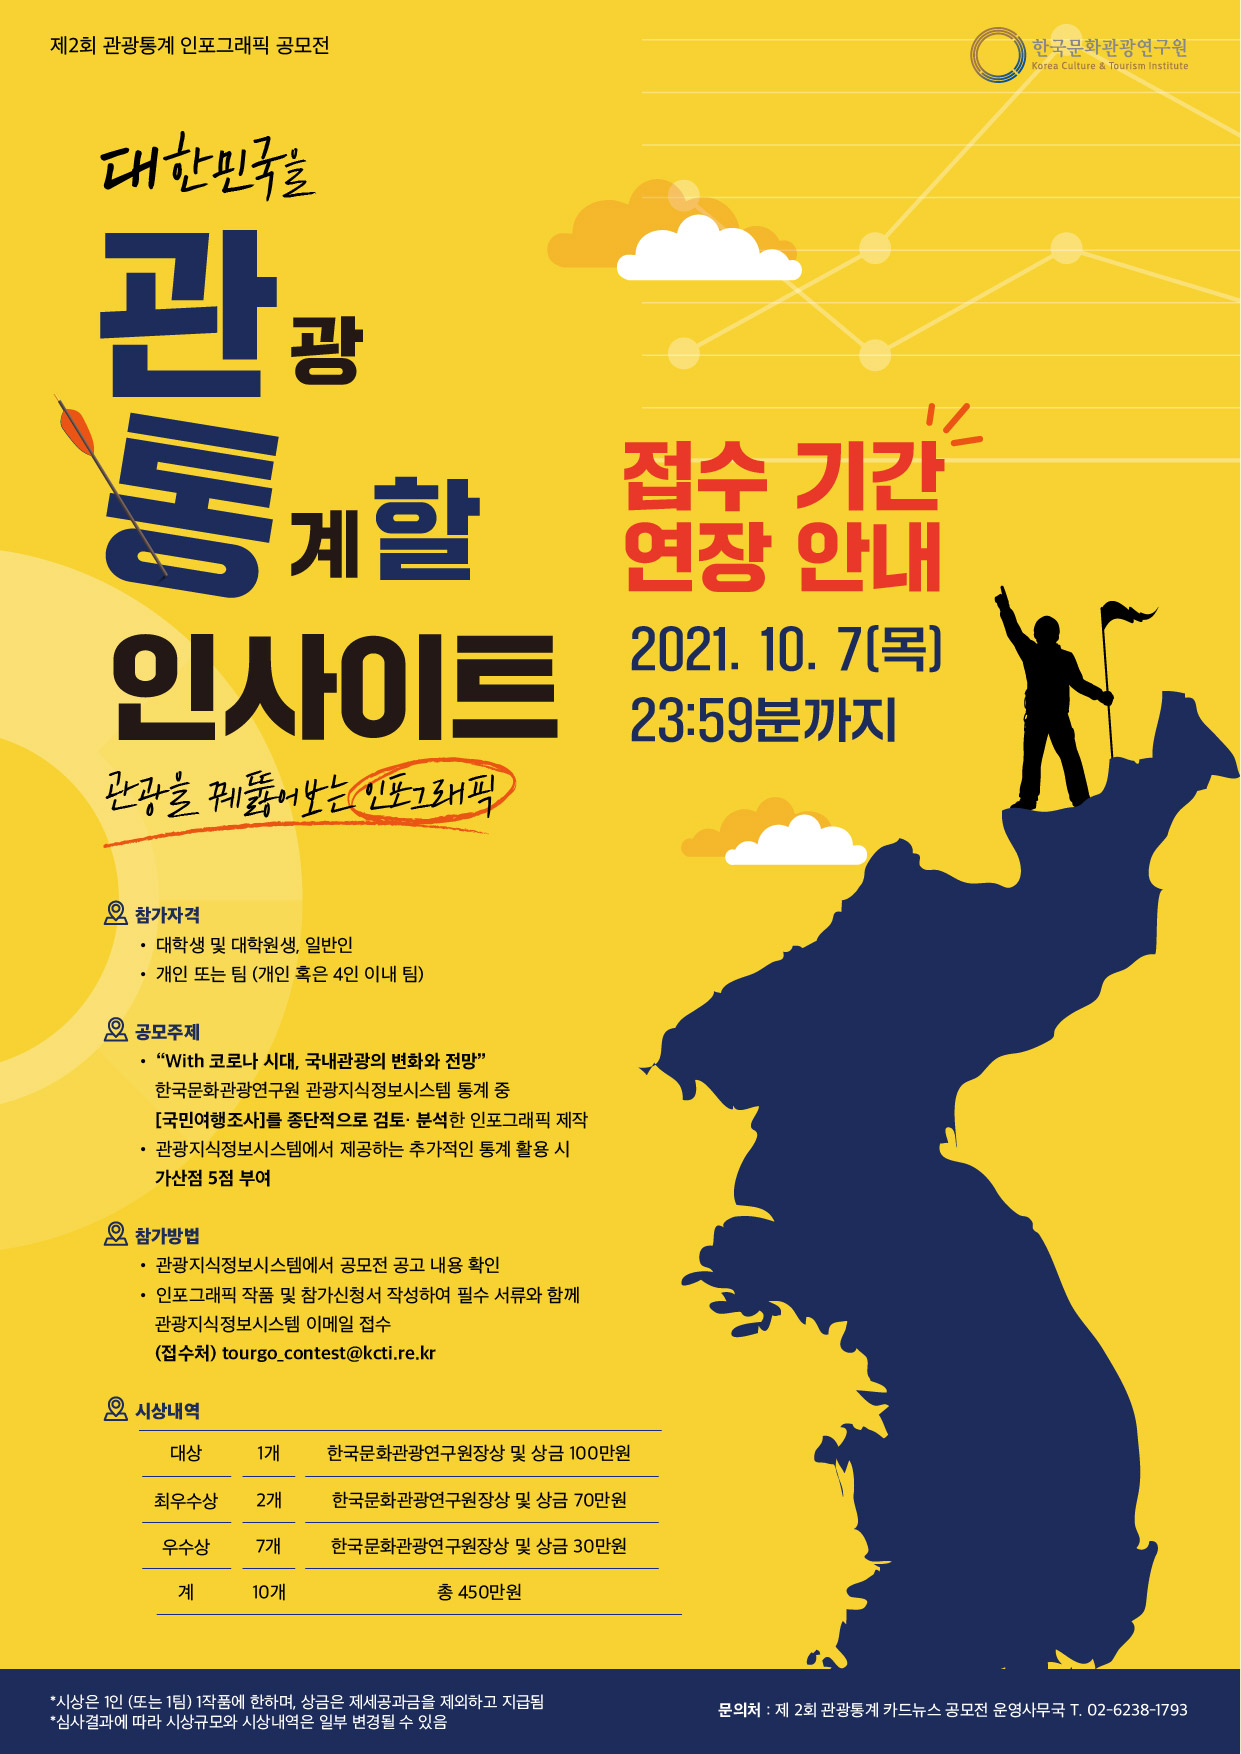 한국문화관광연구원 2021년 제2회 관광통계 인포그래픽 공모전